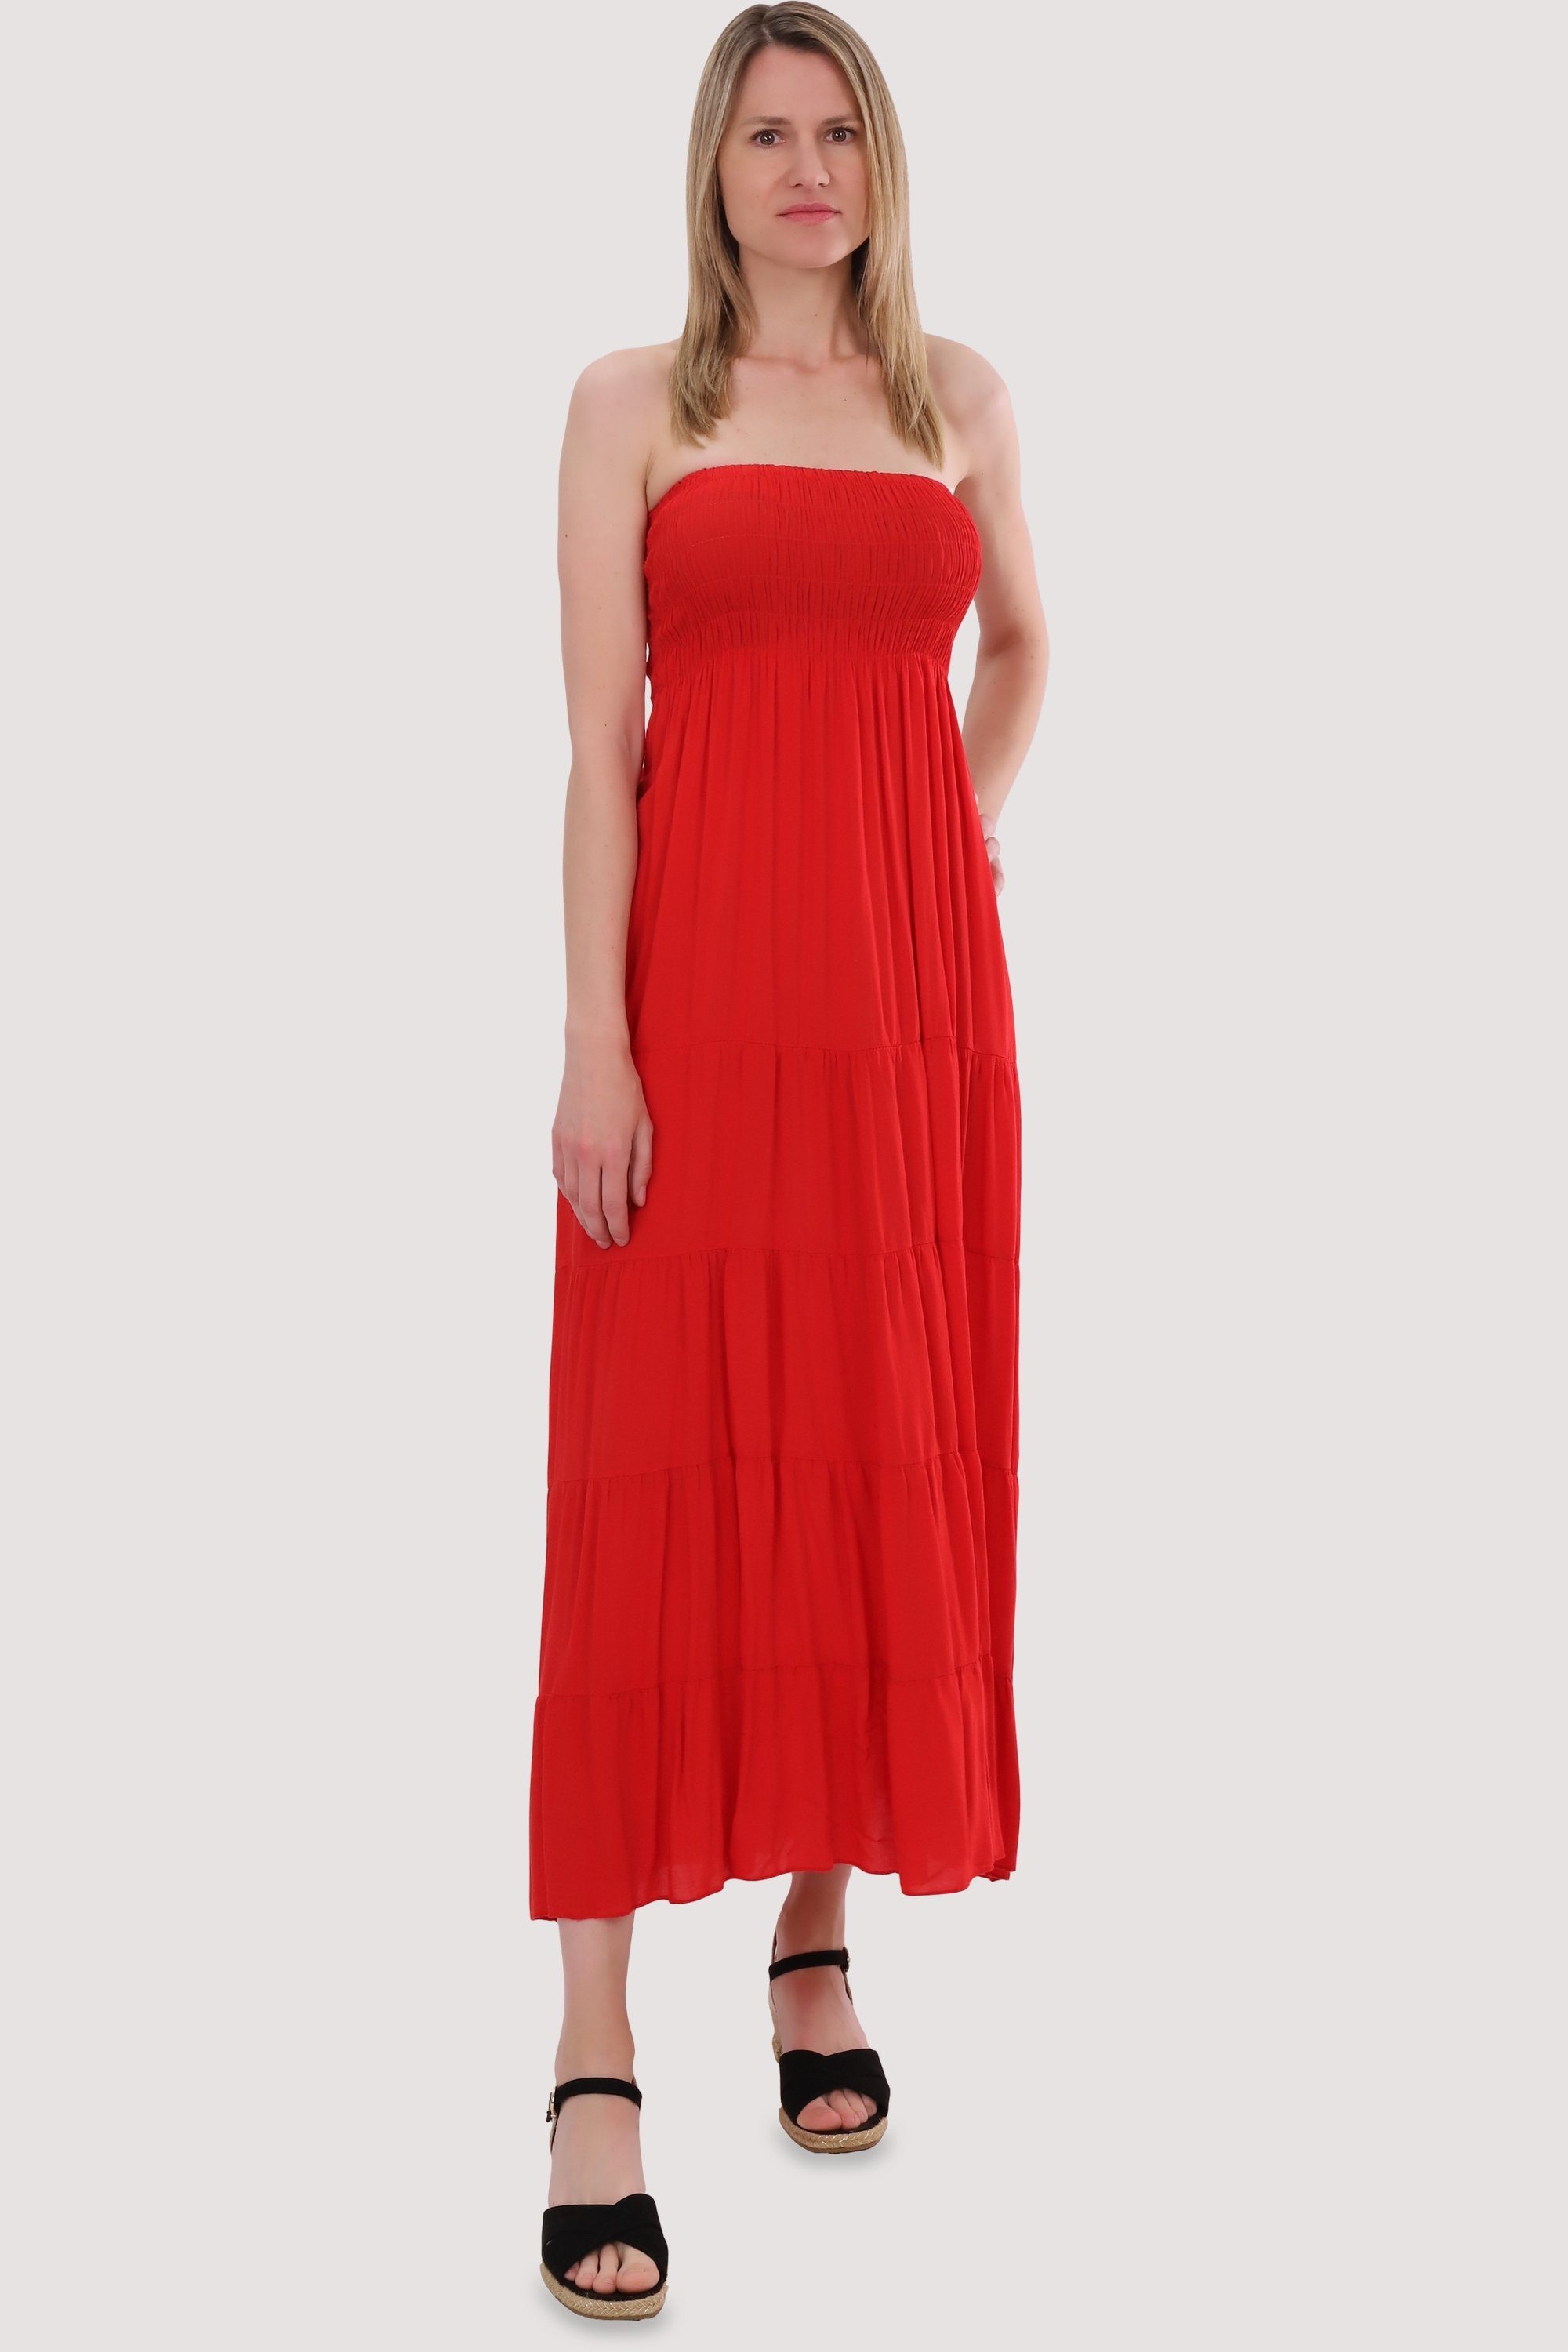 malito more than fashion 4635 Sommerkleid Einheitsgröße rot Bandeaukleid figurumspielendes Strandkleid